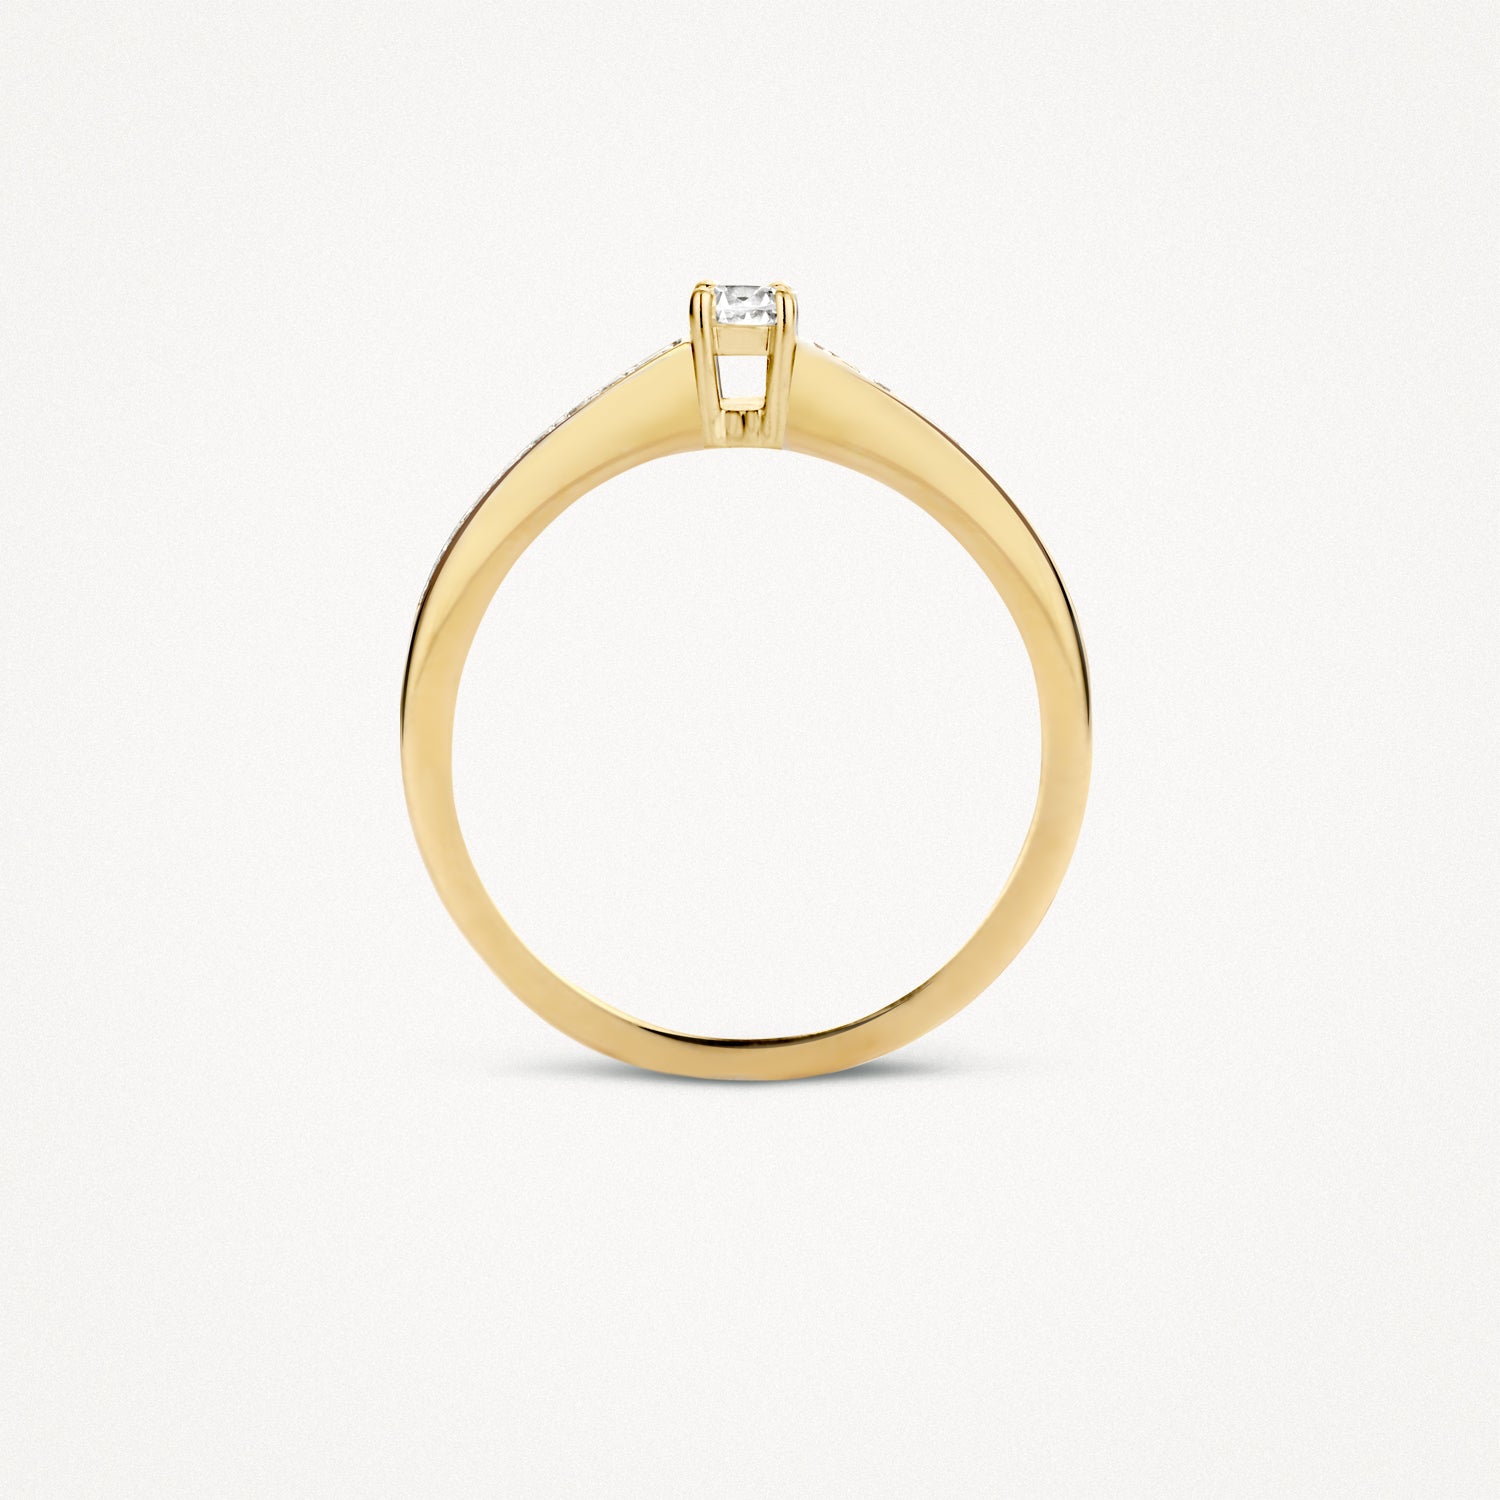 Ring 1145BZI - 14k Gold with Zirconia